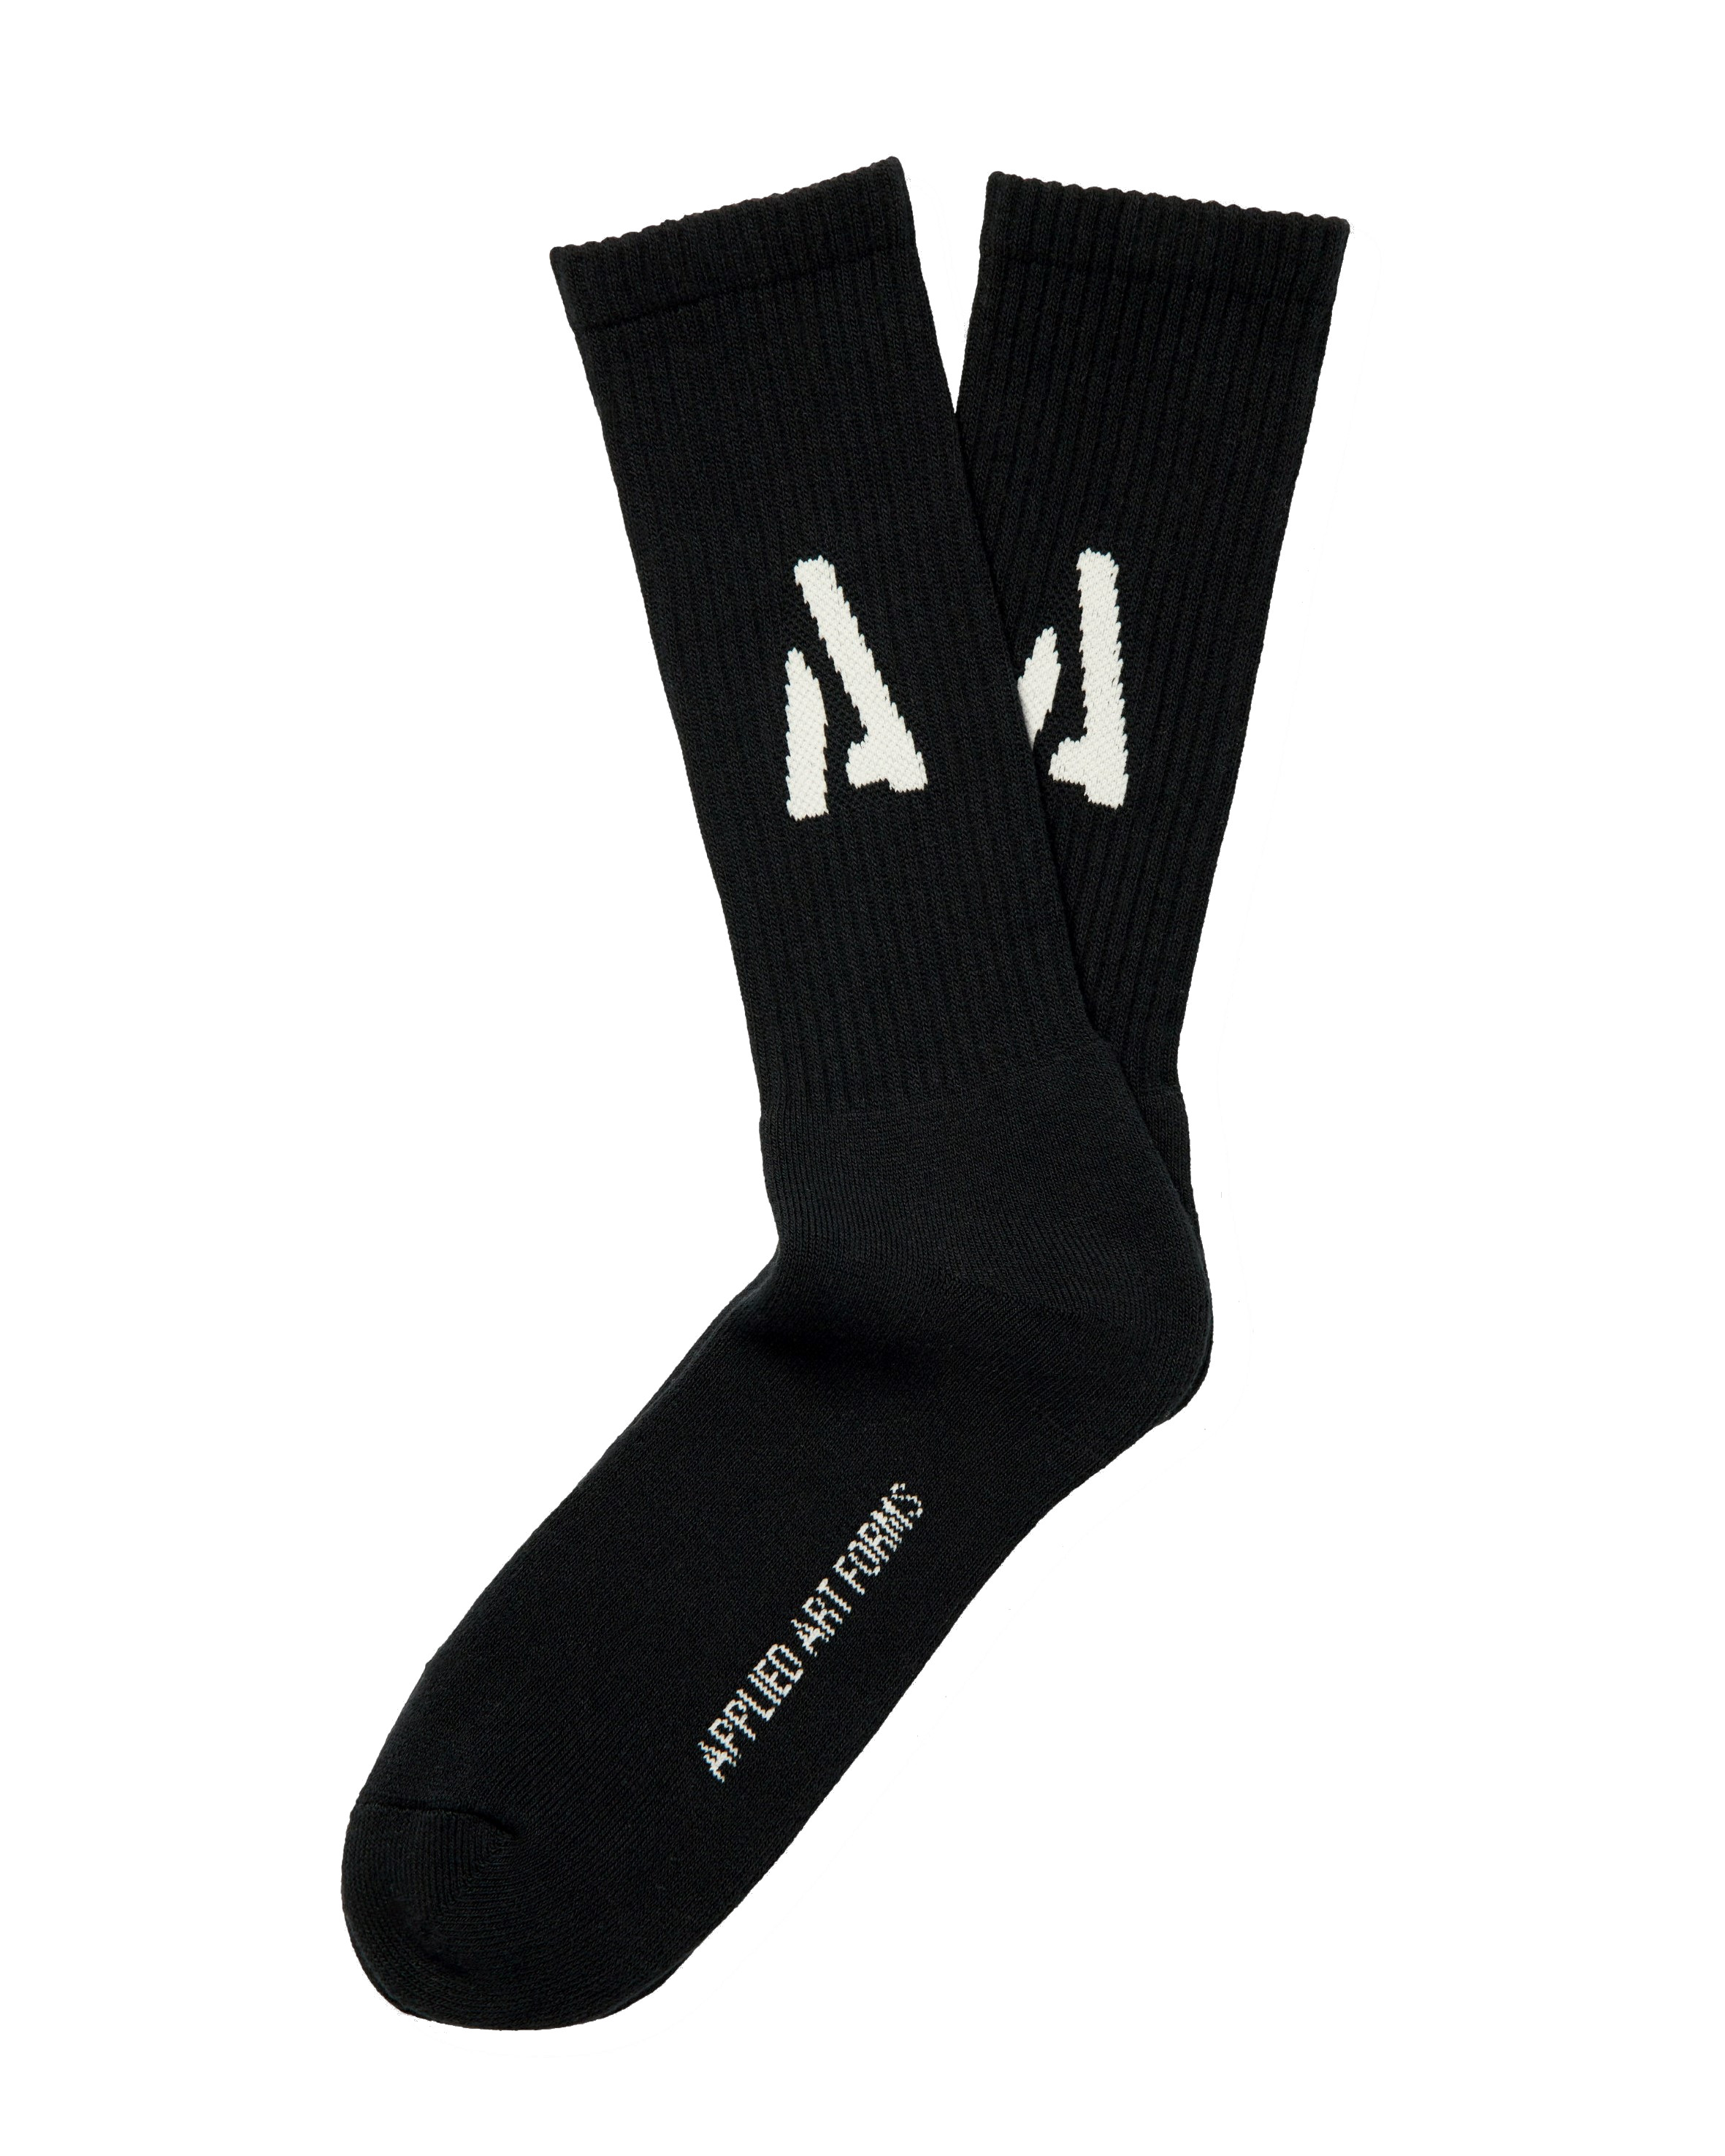 APPLIED ART FORMS Heavyweight Socks in Black 41-43